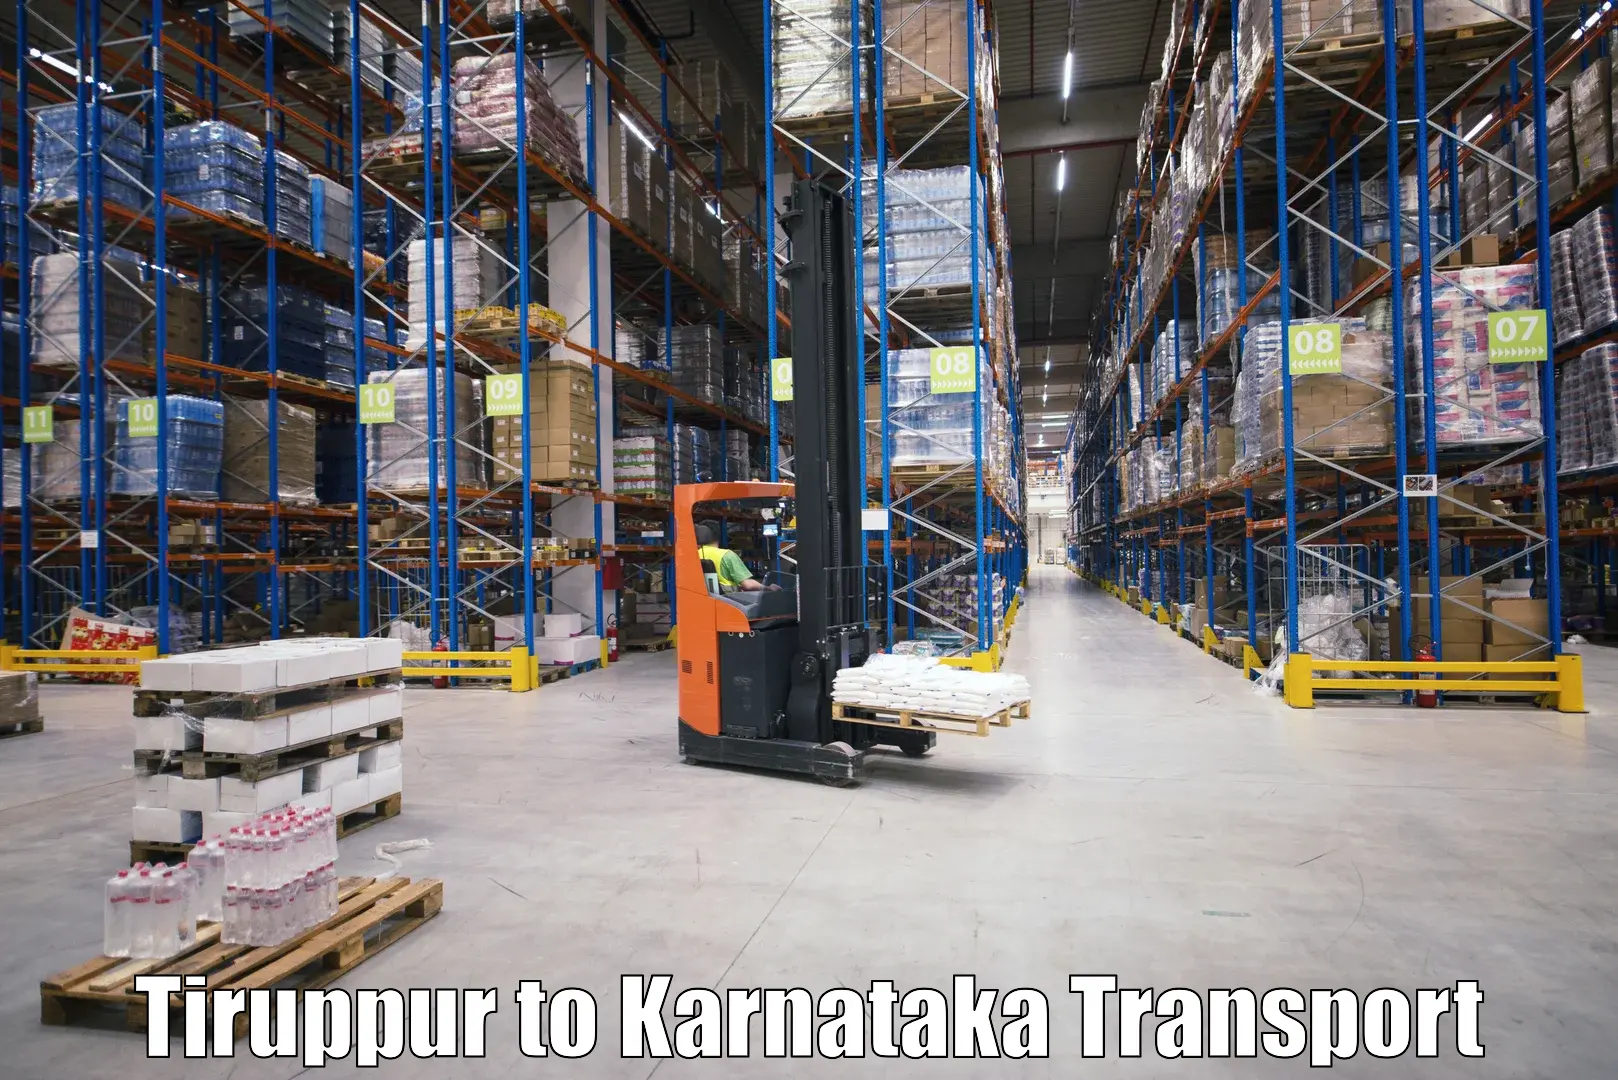 Online transport booking Tiruppur to Piriyapatna